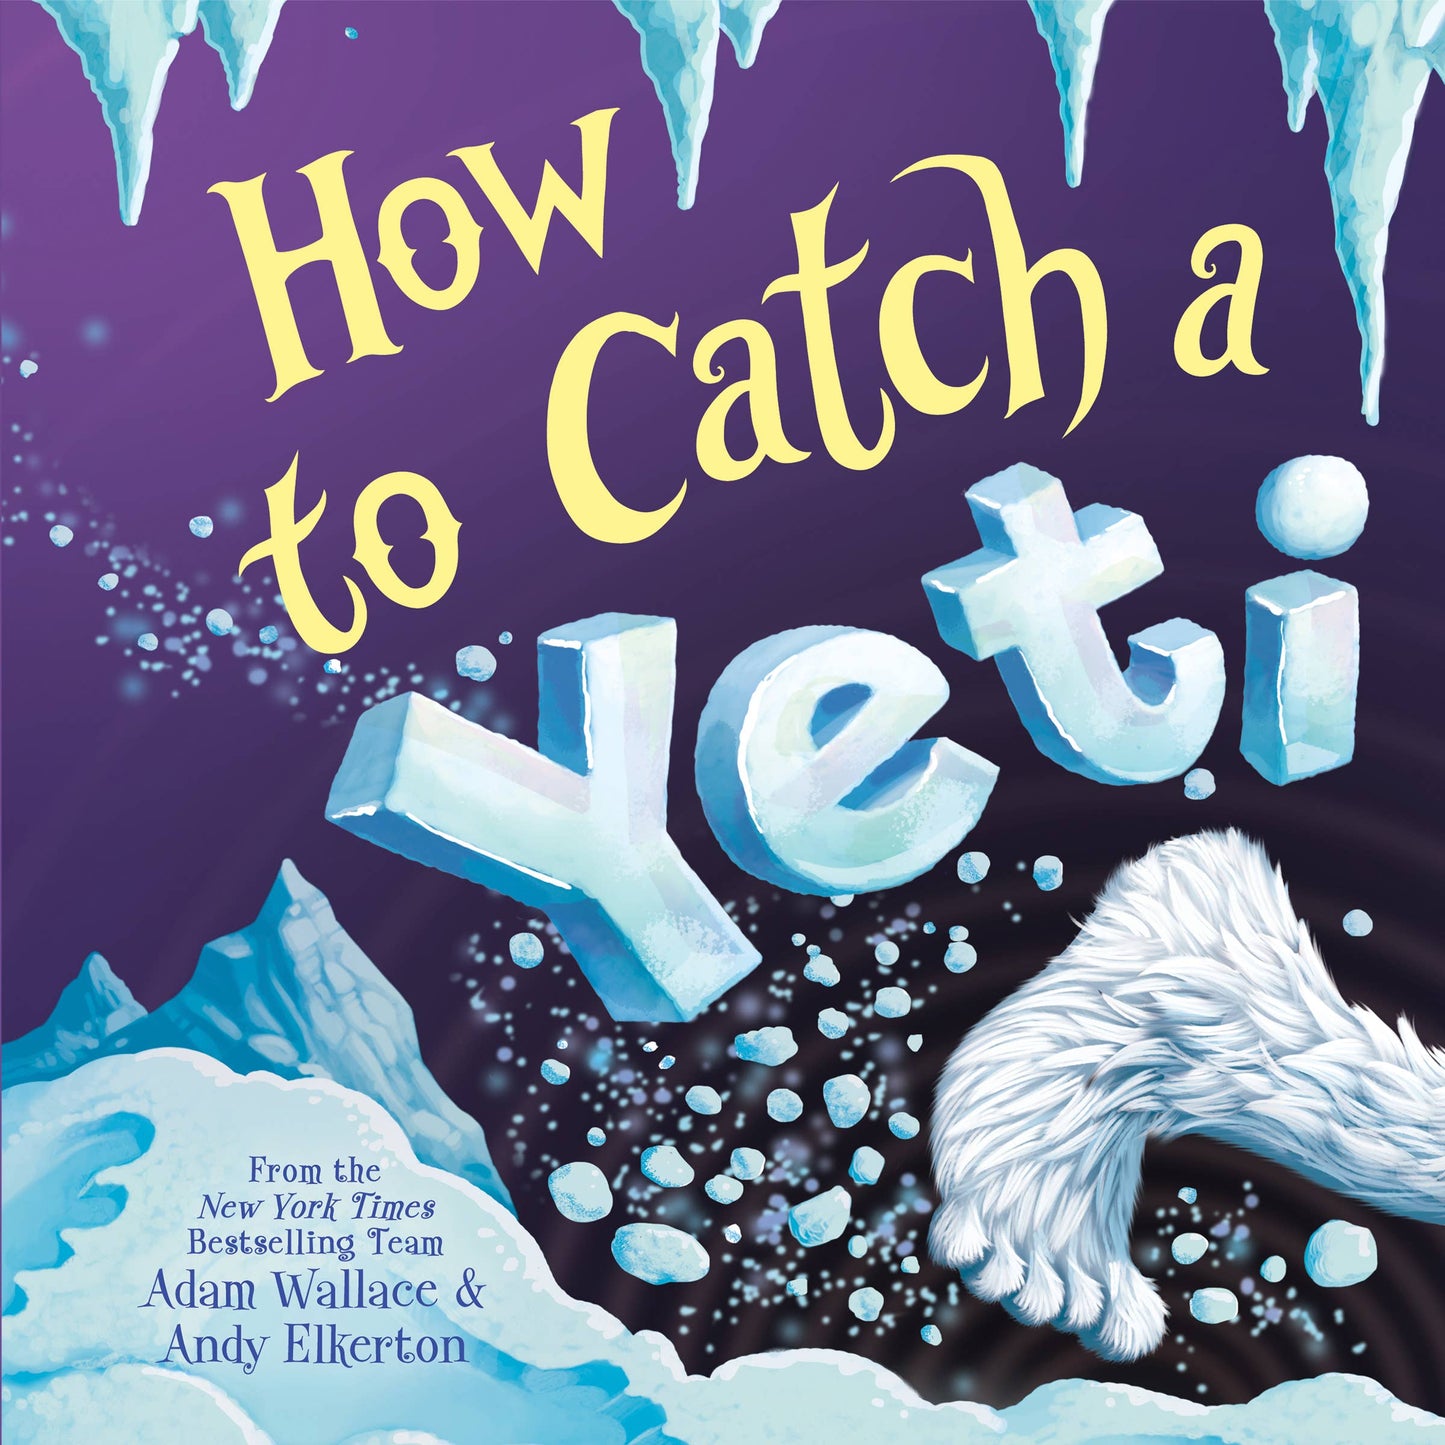 How to Catch a Yeti (HC)